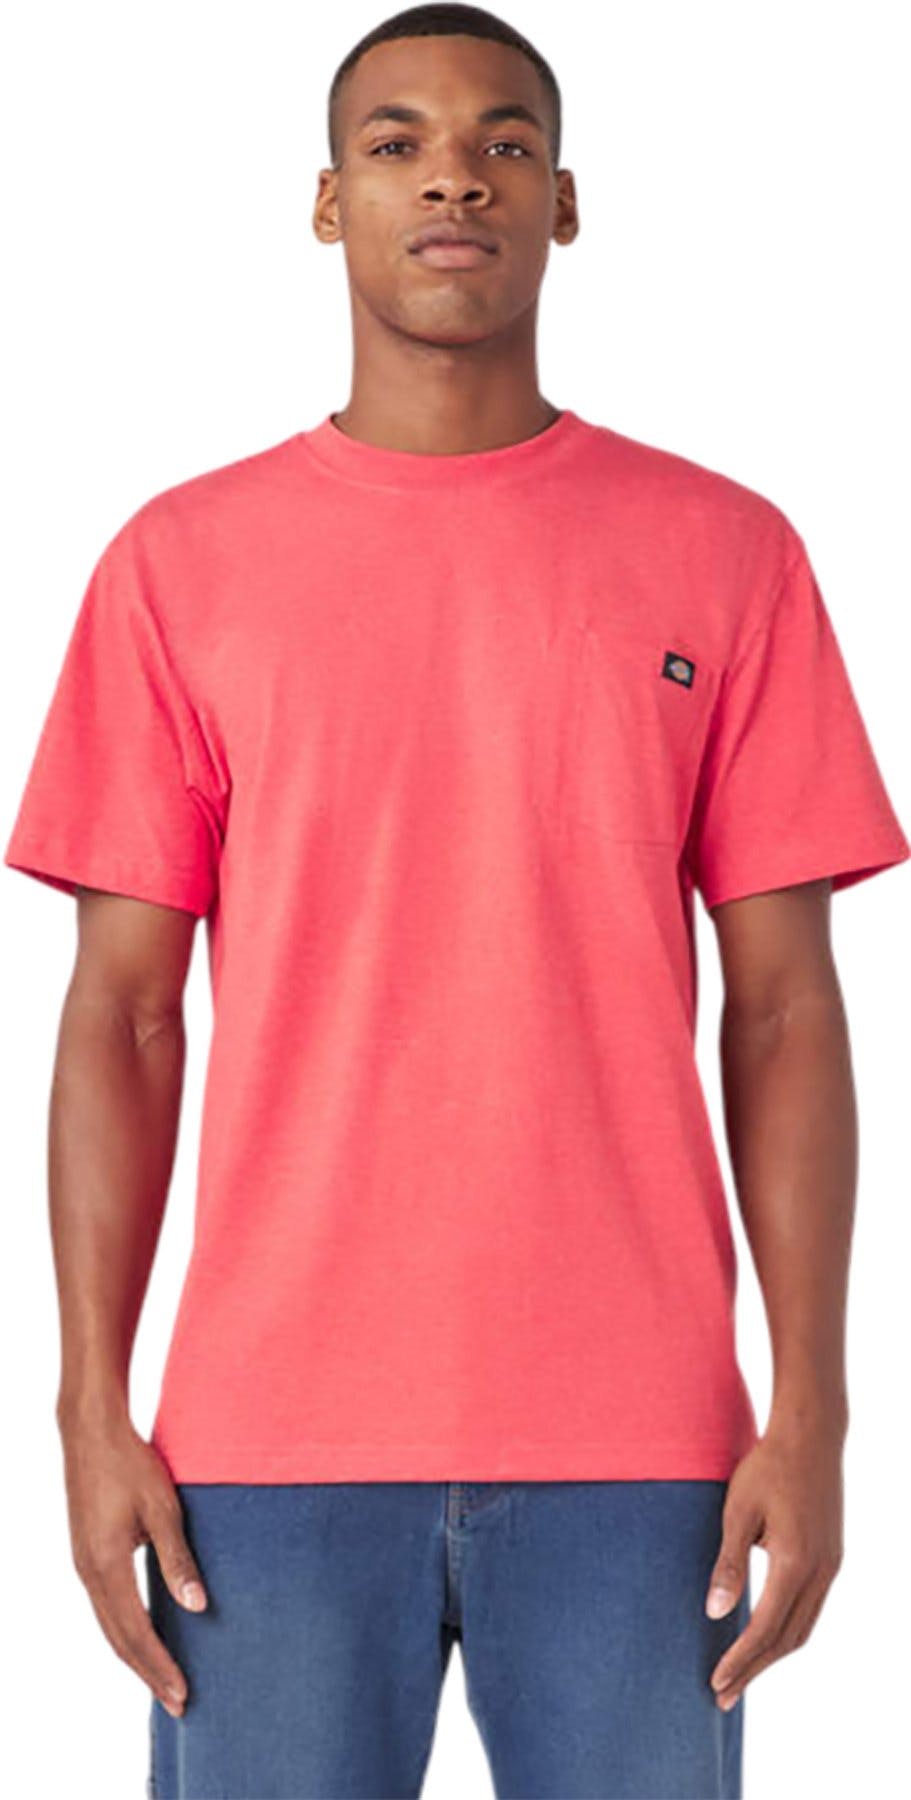 Image de produit pour T-shirt épais chiné avec poche à manches courtes - Homme